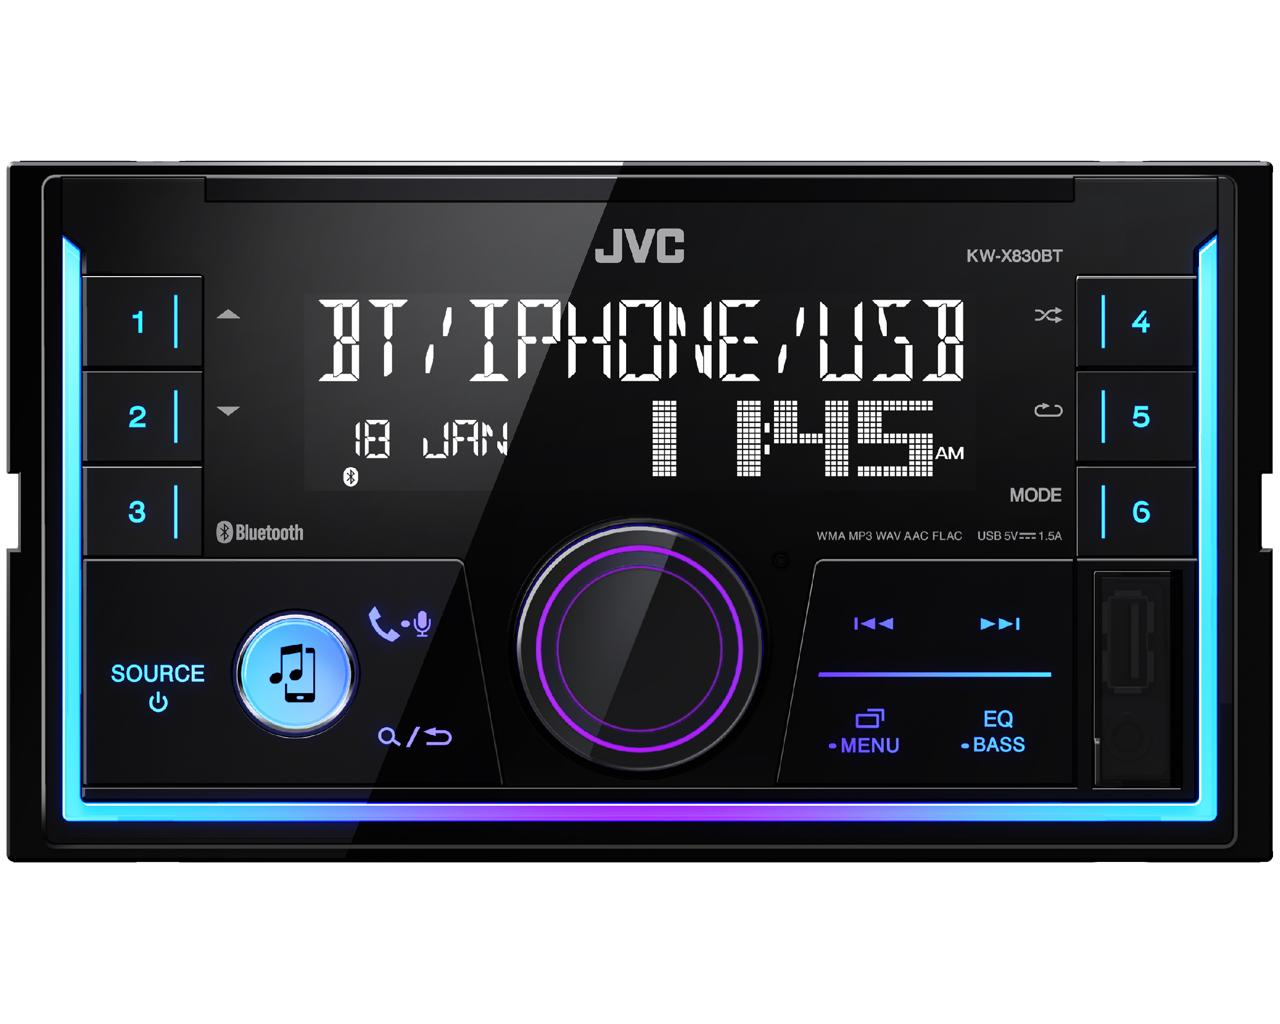 JVC KW-X830BT 2DIN, Mechless autoradio met Bluetooth. Geschikt voor Spotify, iPod/iPhone